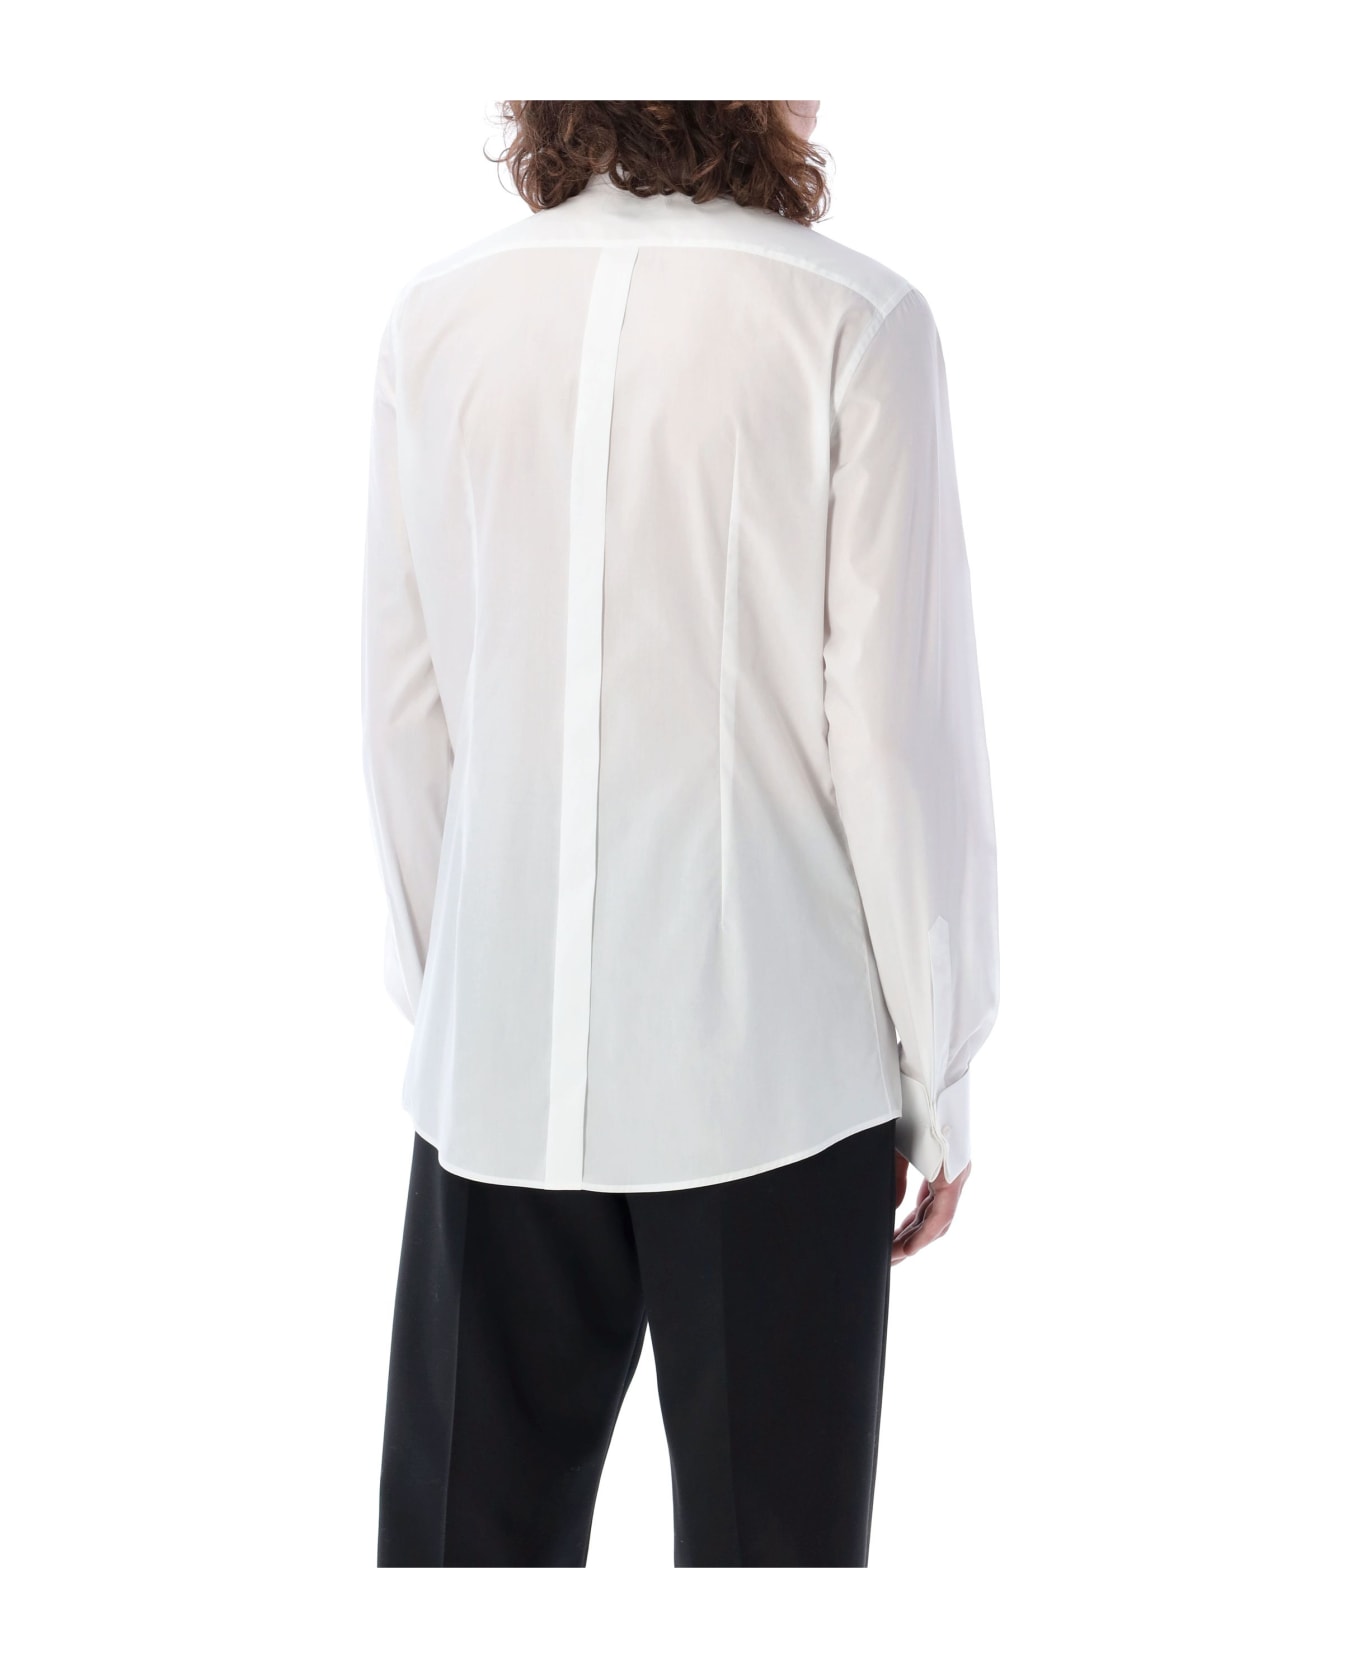 Dolce & Gabbana Tuxedo Shirt - WHITE シャツ